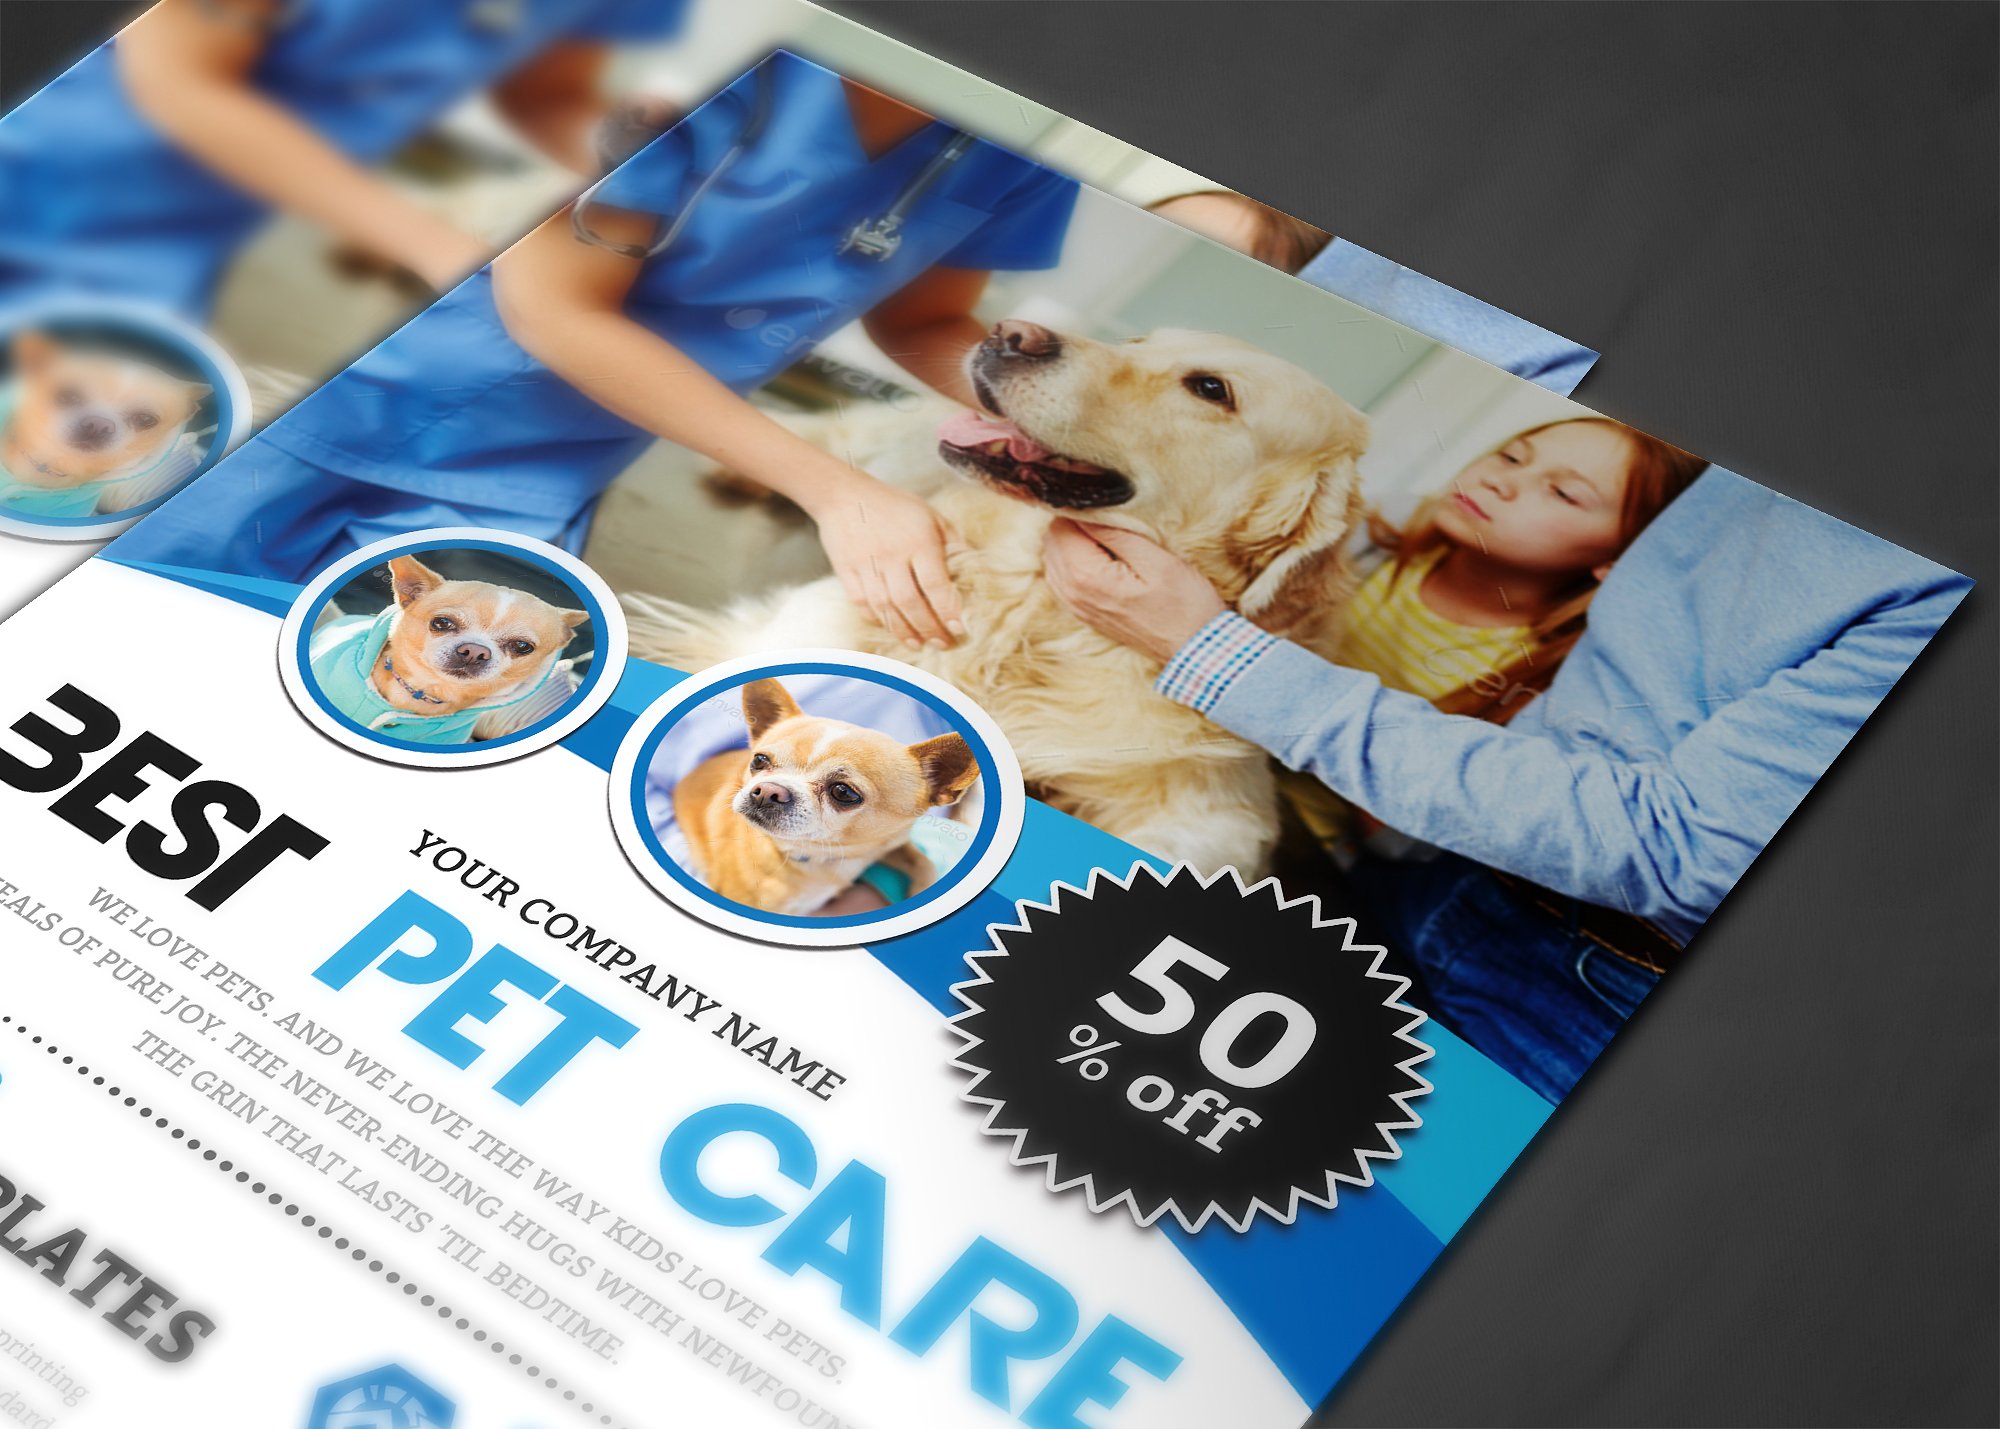 宠物护理海报背景素材模板 Pet Care Flyer Te